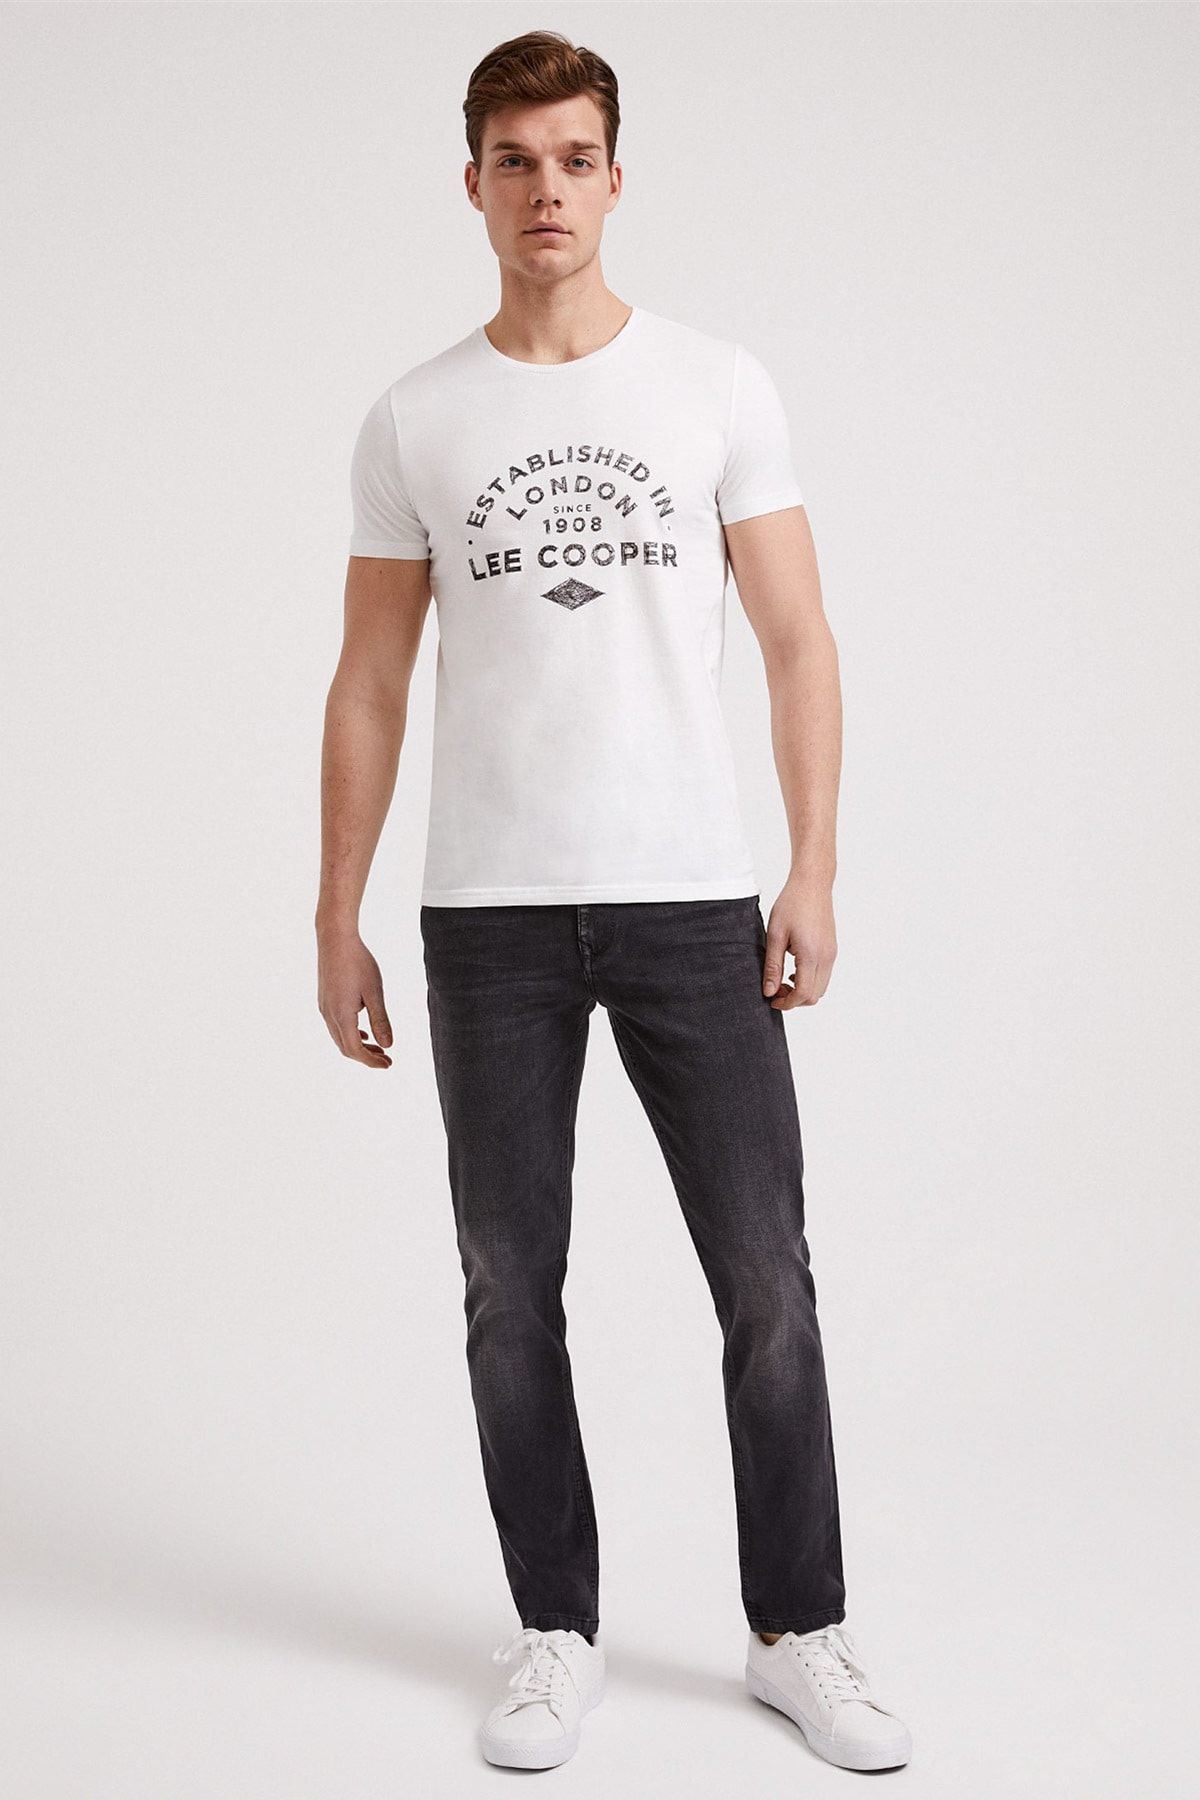 Lee Cooper Erkek Established O Yaka T-Shirt Beyaz 202 LCM 242010